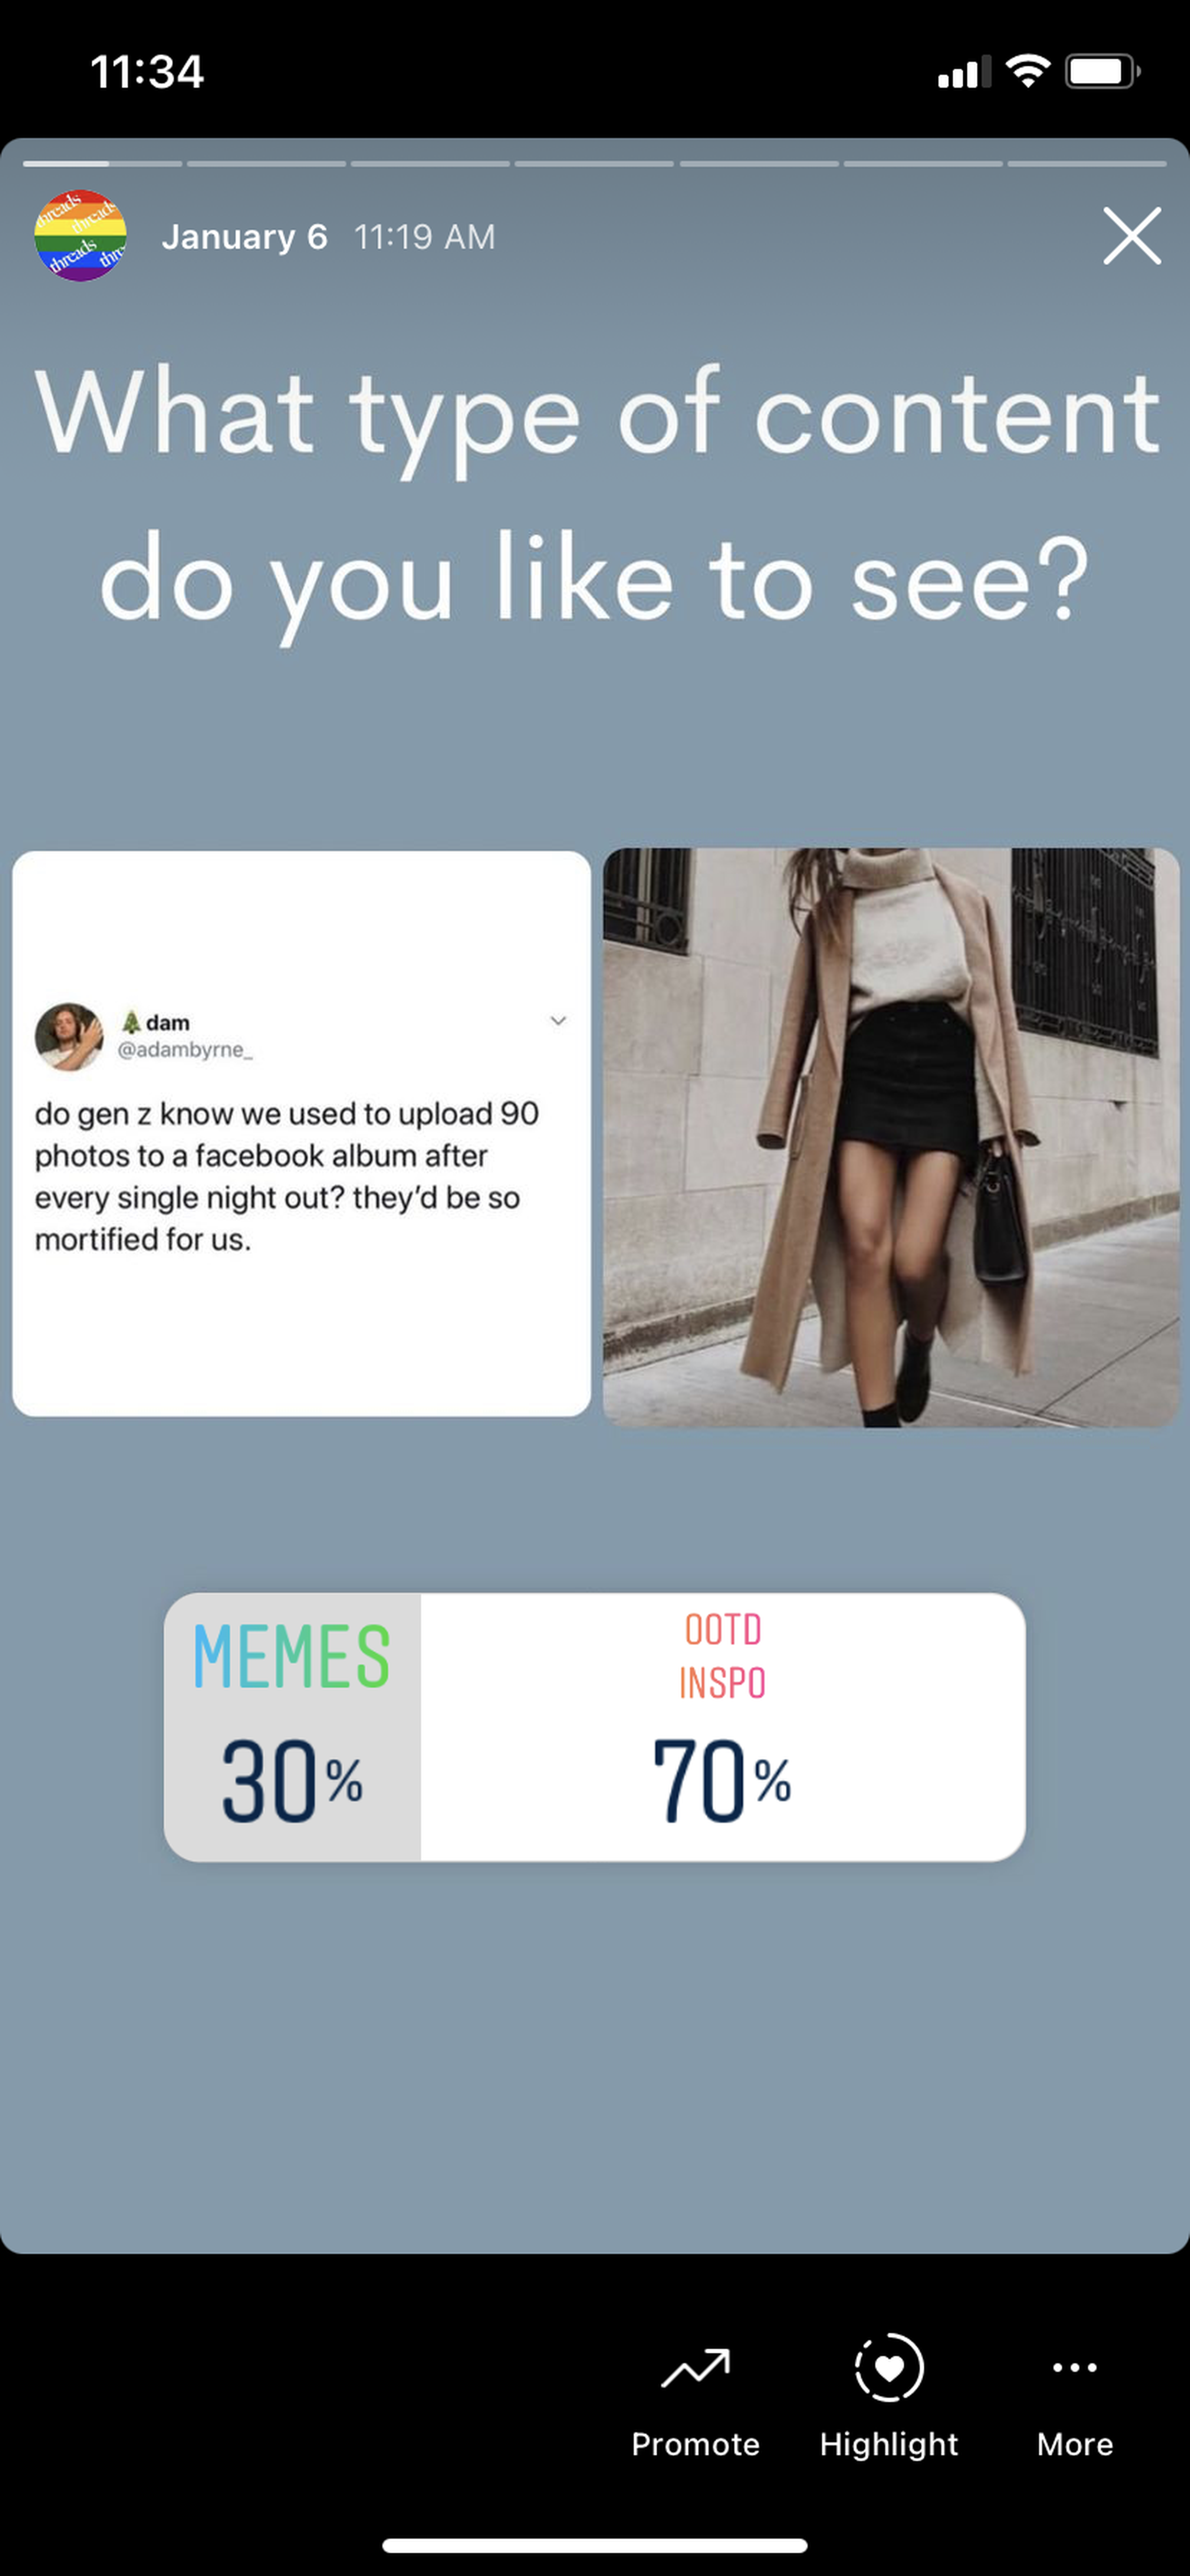 Captura de Instagram de la compañía en una de sus campañas preguntando a sus seguidores